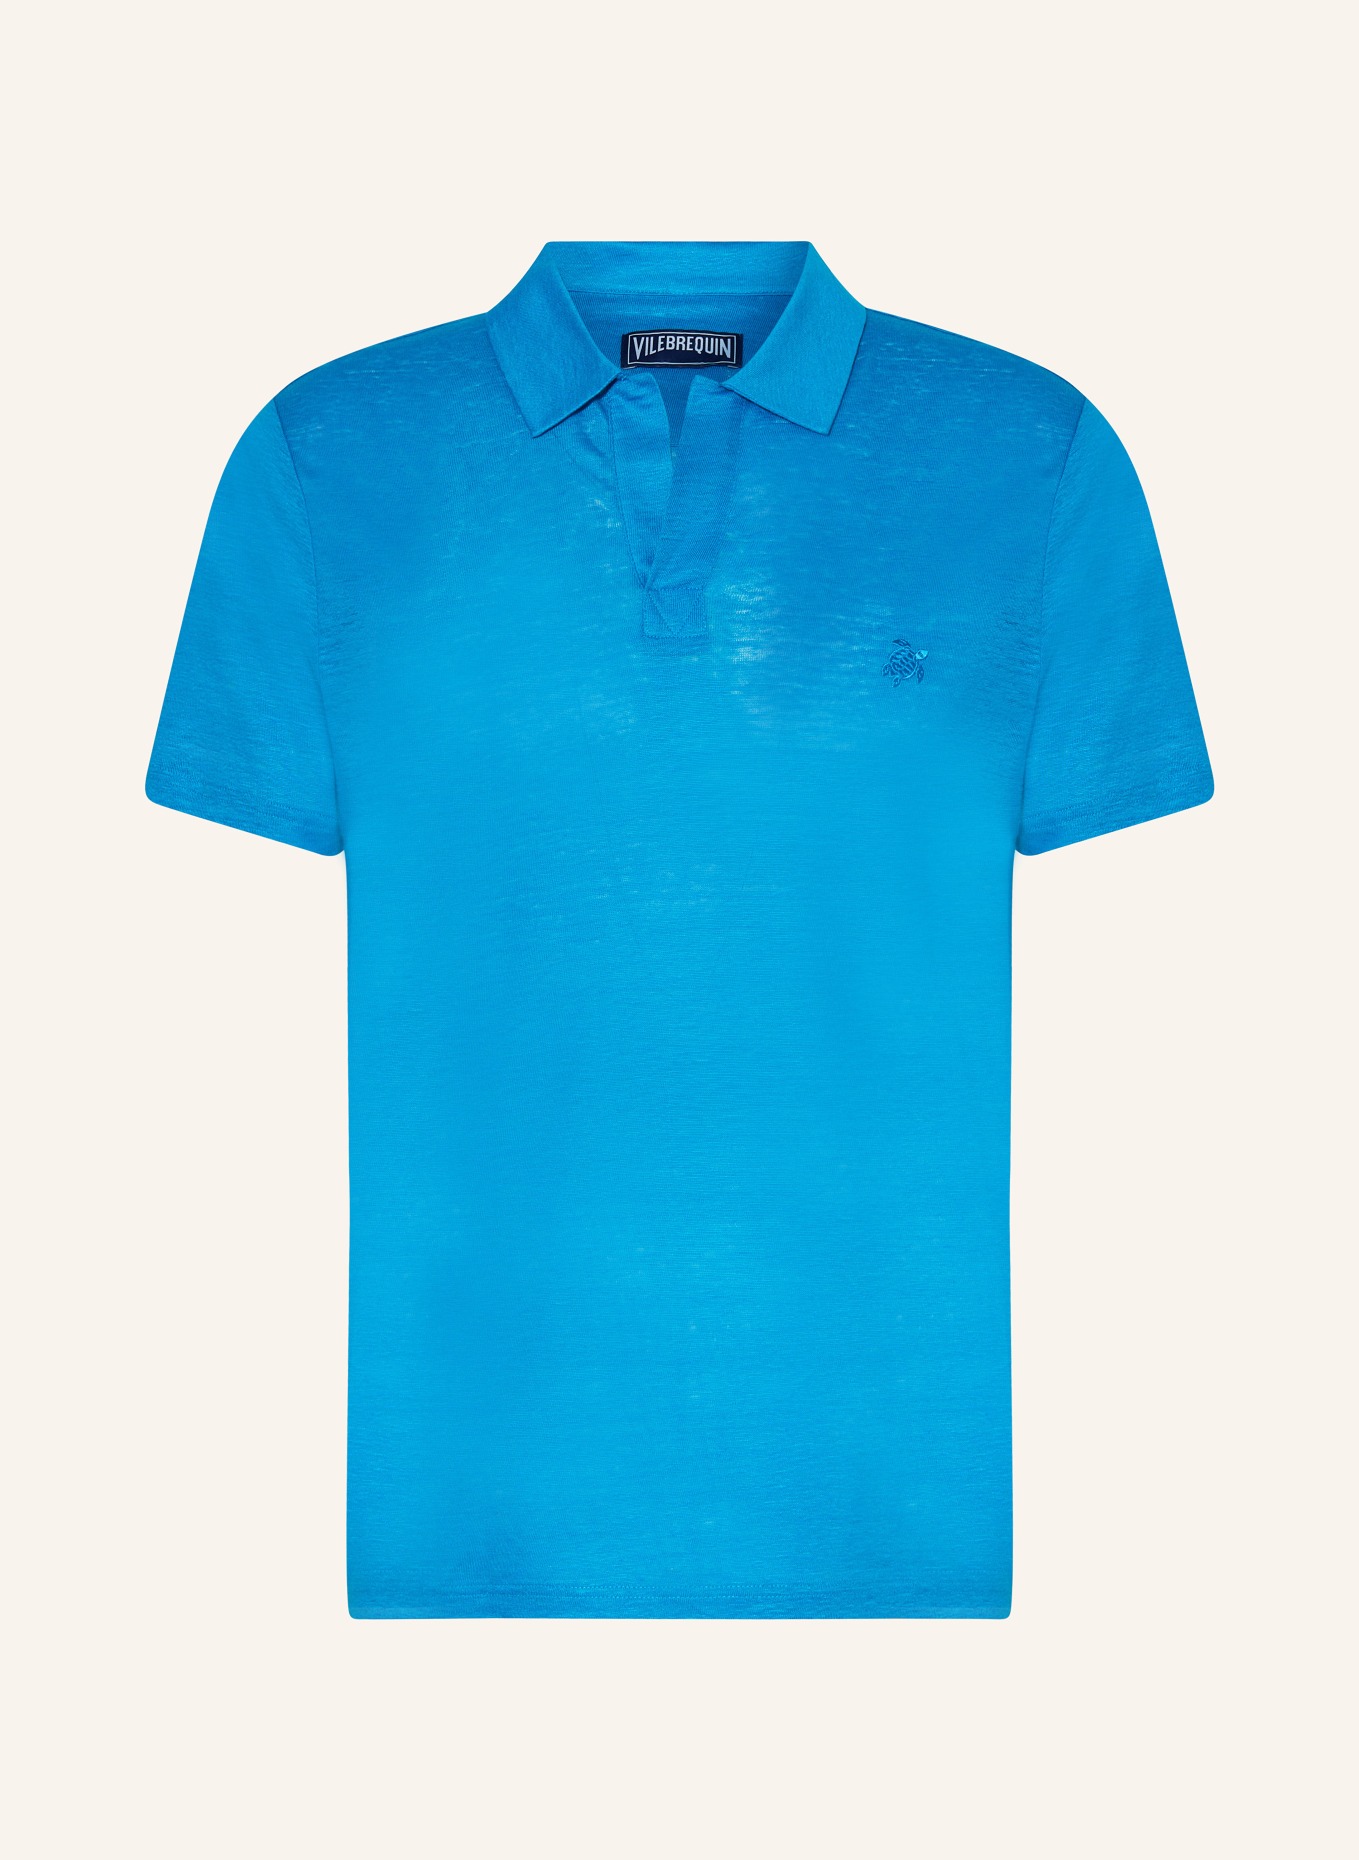 VILEBREQUIN Leinen-Poloshirt PYRAMIDE, Farbe: TÜRKIS (Bild 1)